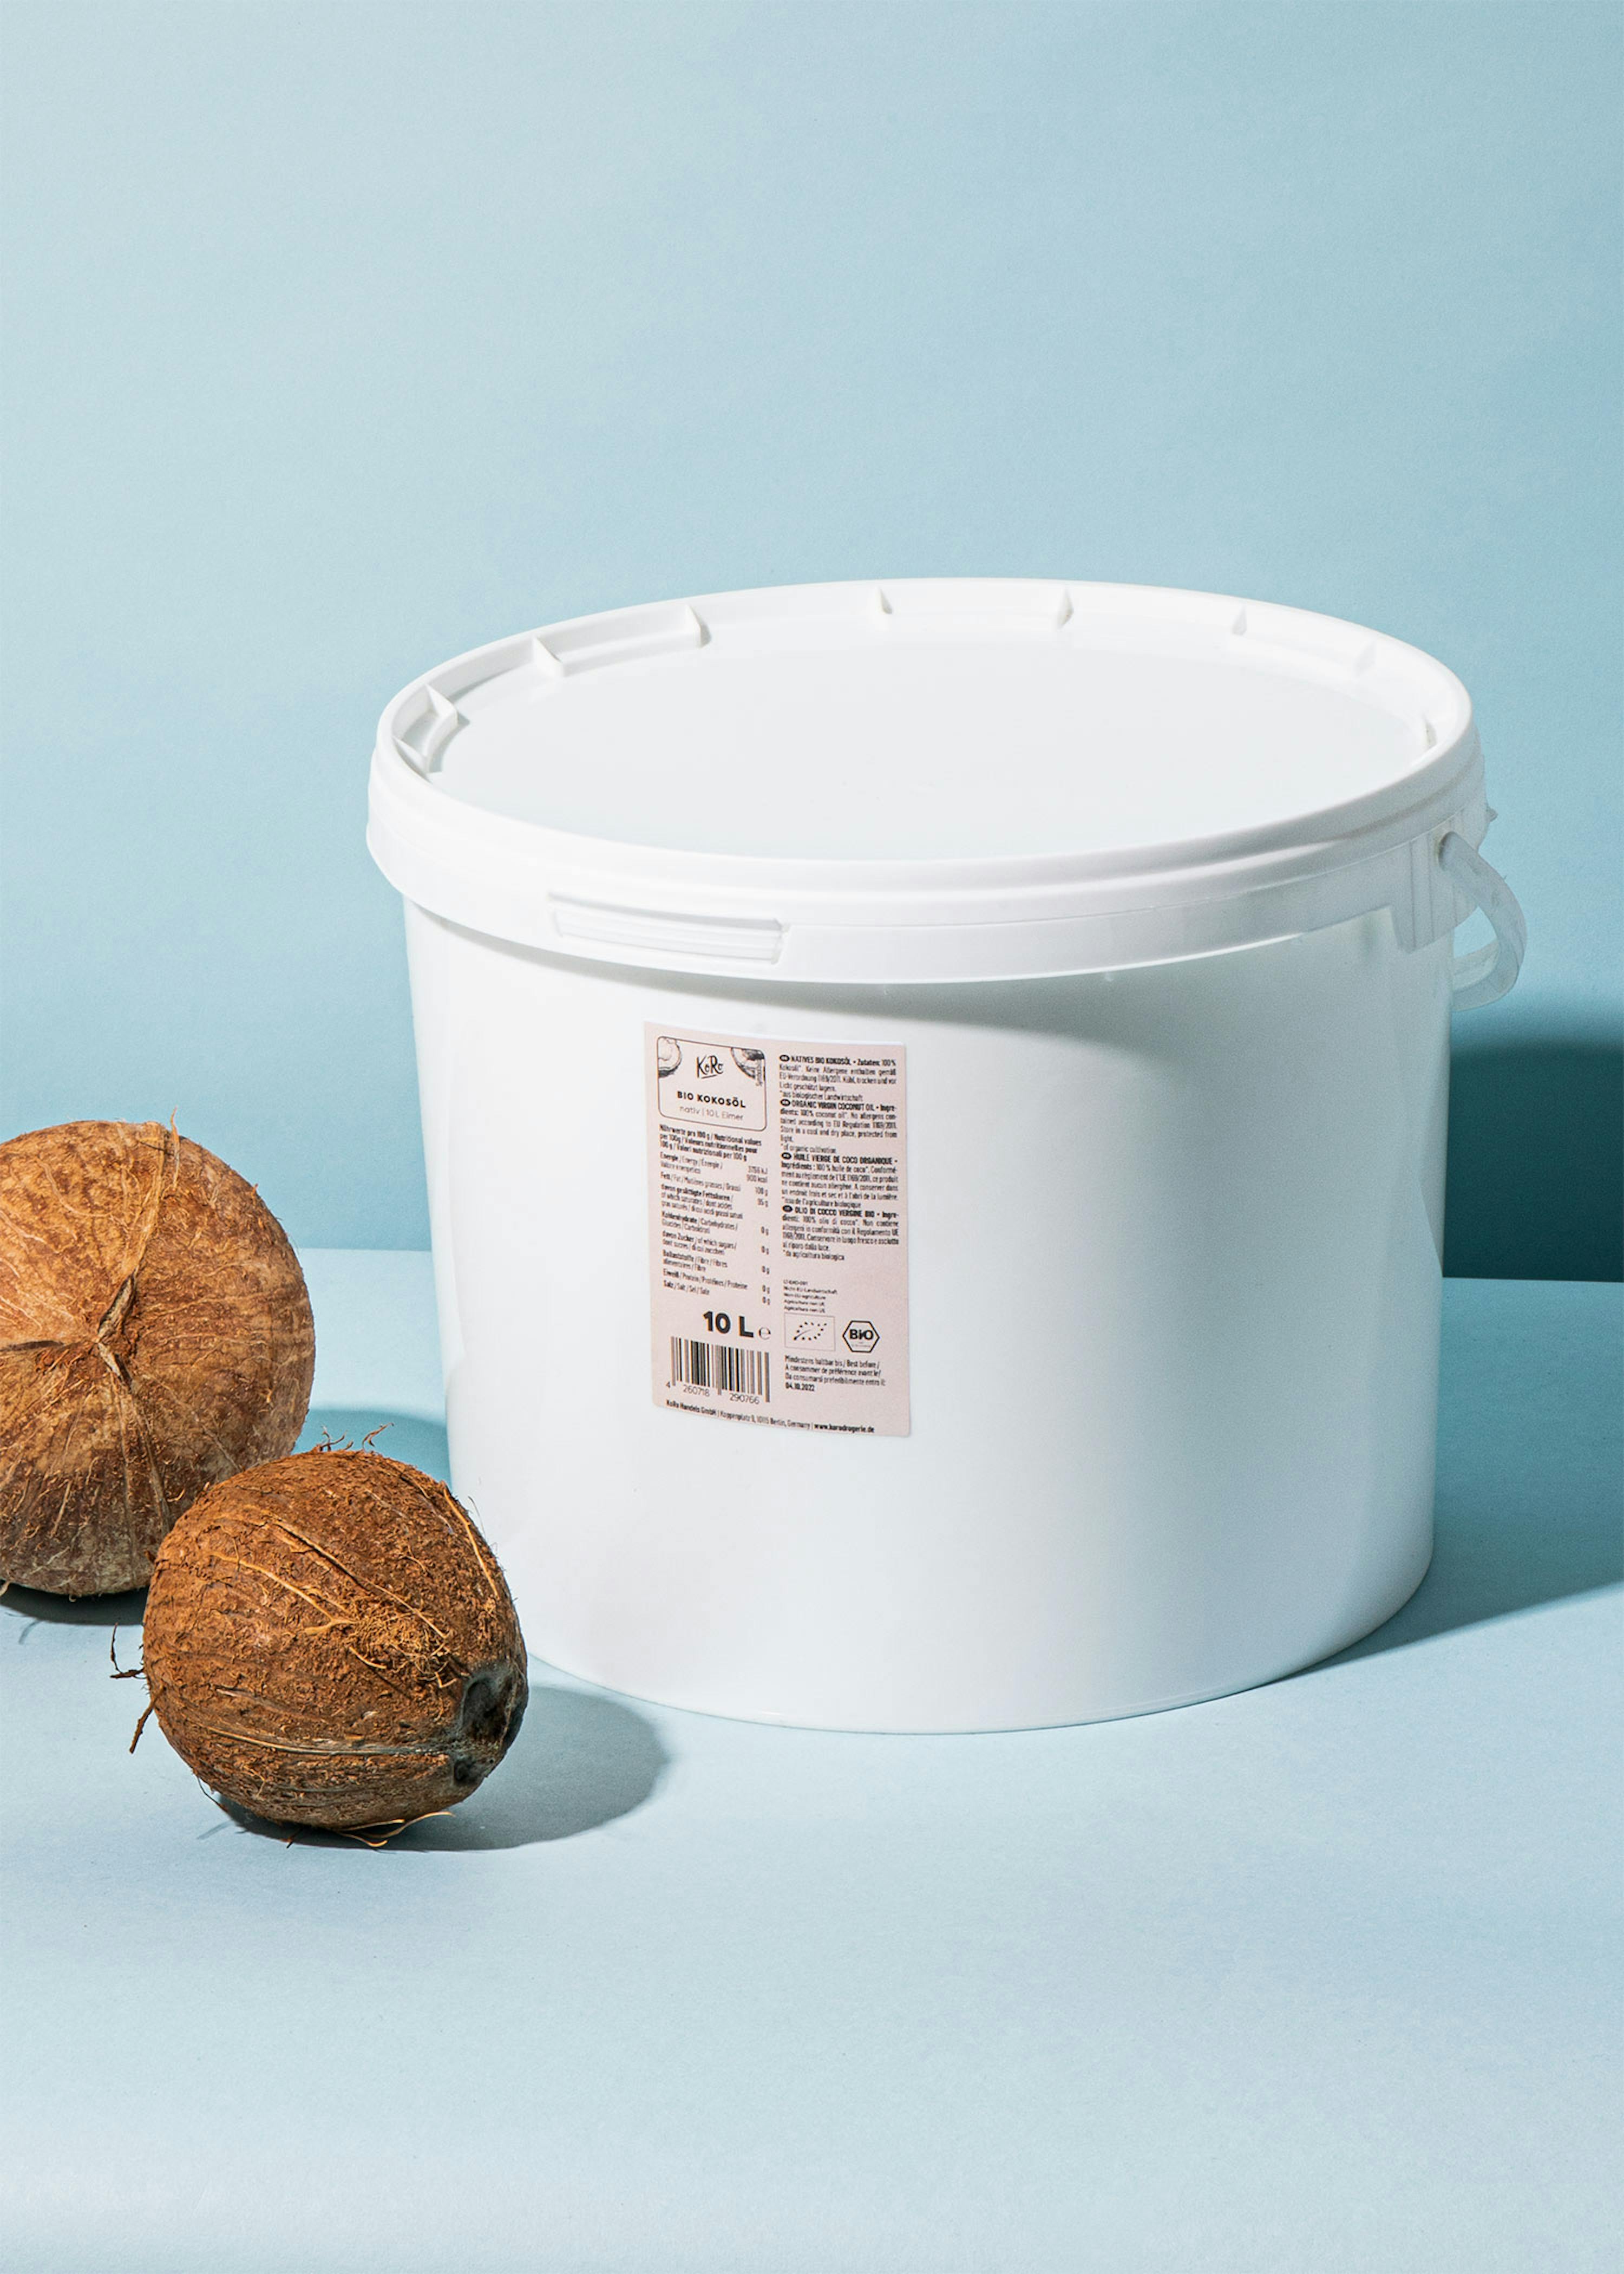 Bekend Mantel buitenaards wezen Biologische kokosolie 10 liter emmer kopen | KoRo Belgium